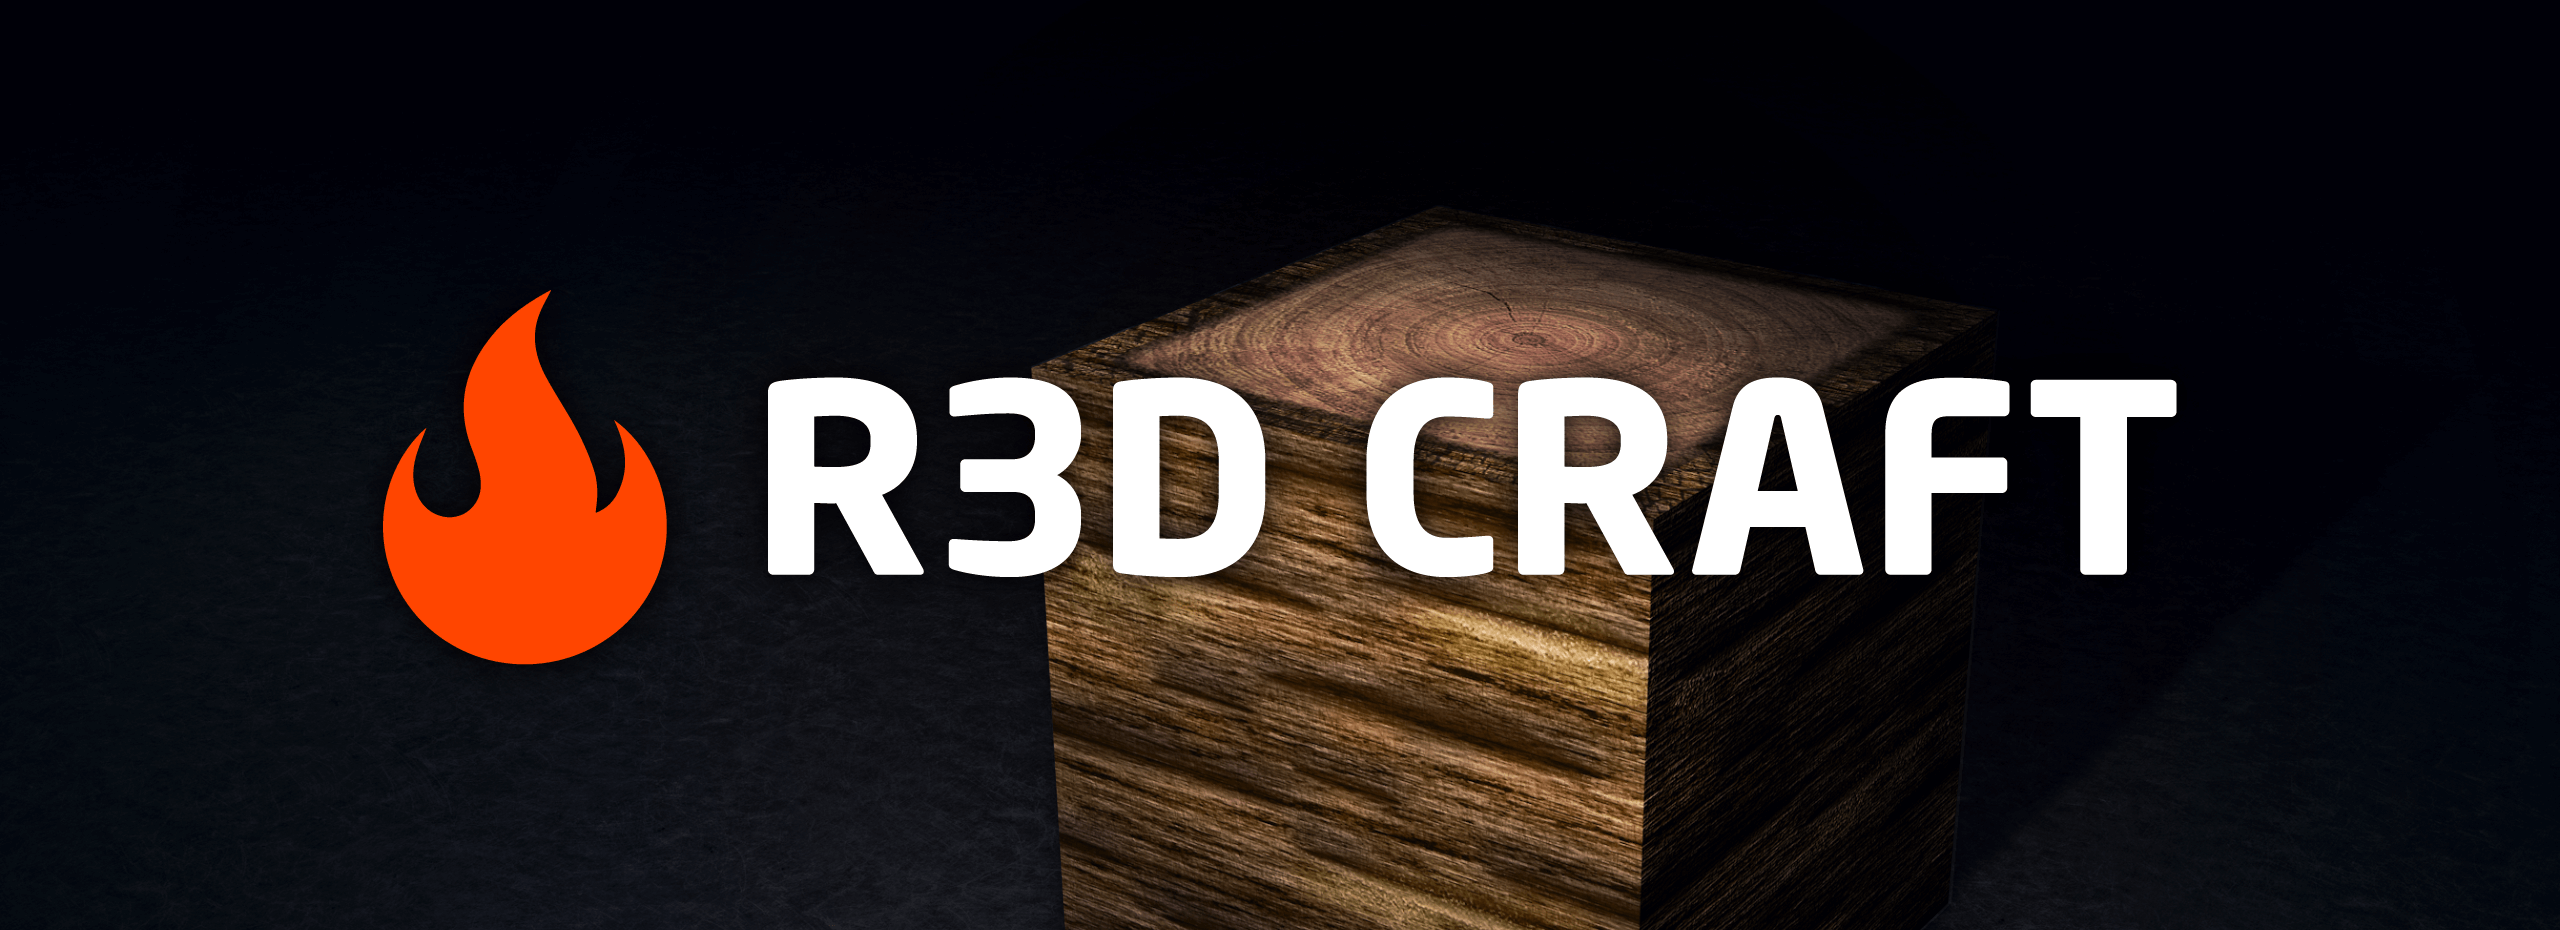 R3D CRAFT screenshot 1